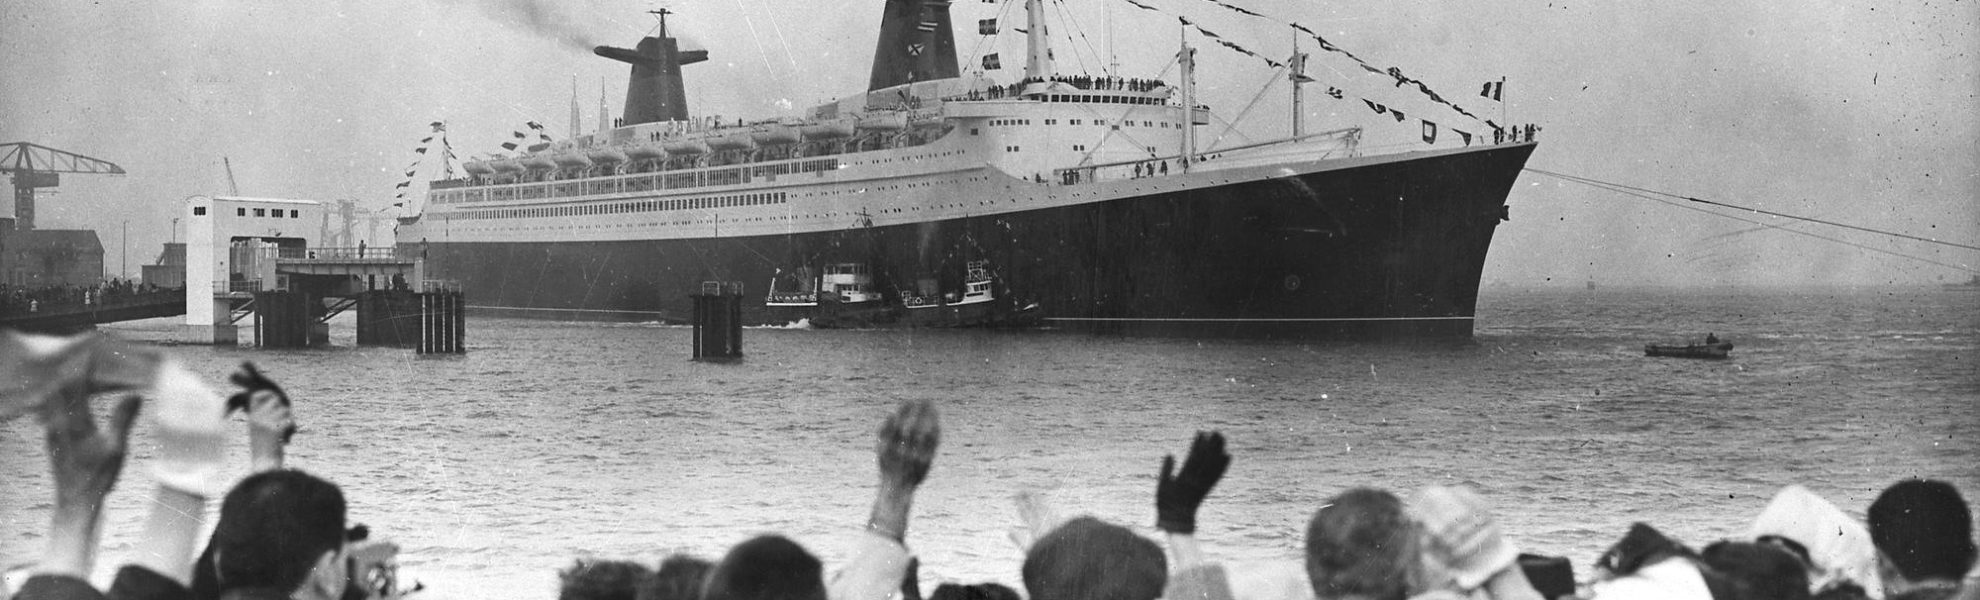 Photographie noir et blanc du paquebot France sortant du port de Saint-Nazaire, au premier plan une foule agite les bras.